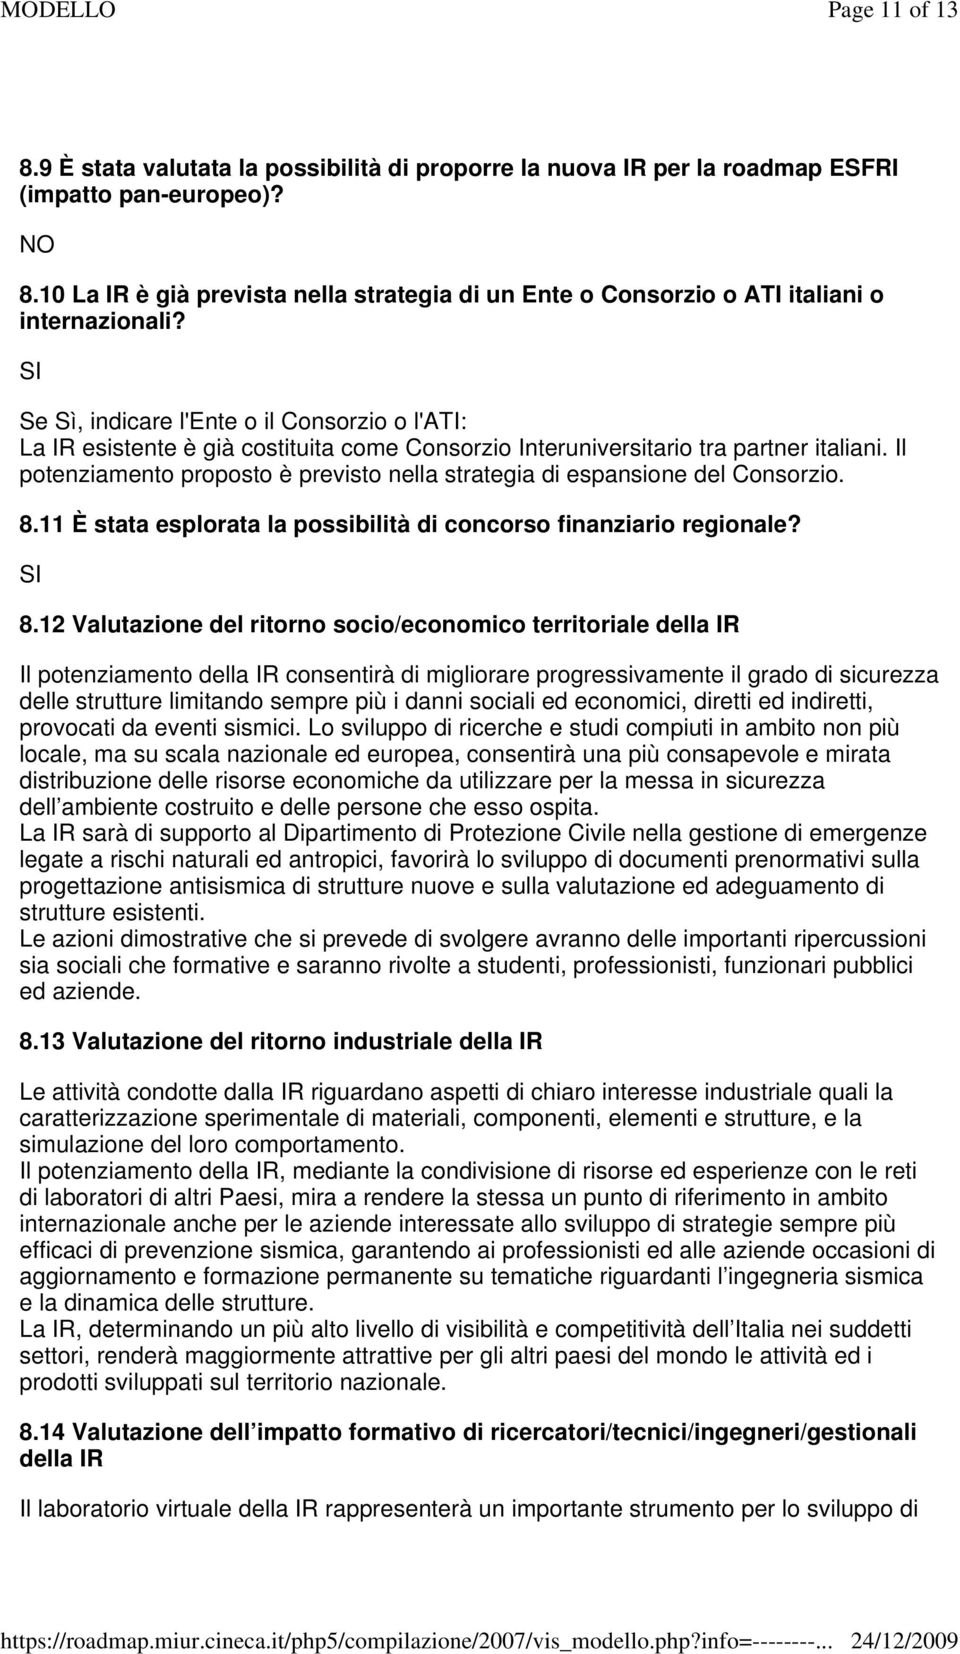 Se Sì, indicare l'ente o il Consorzio o l'ati: La IR esistente è già costituita come Consorzio Interuniversitario tra partner italiani.